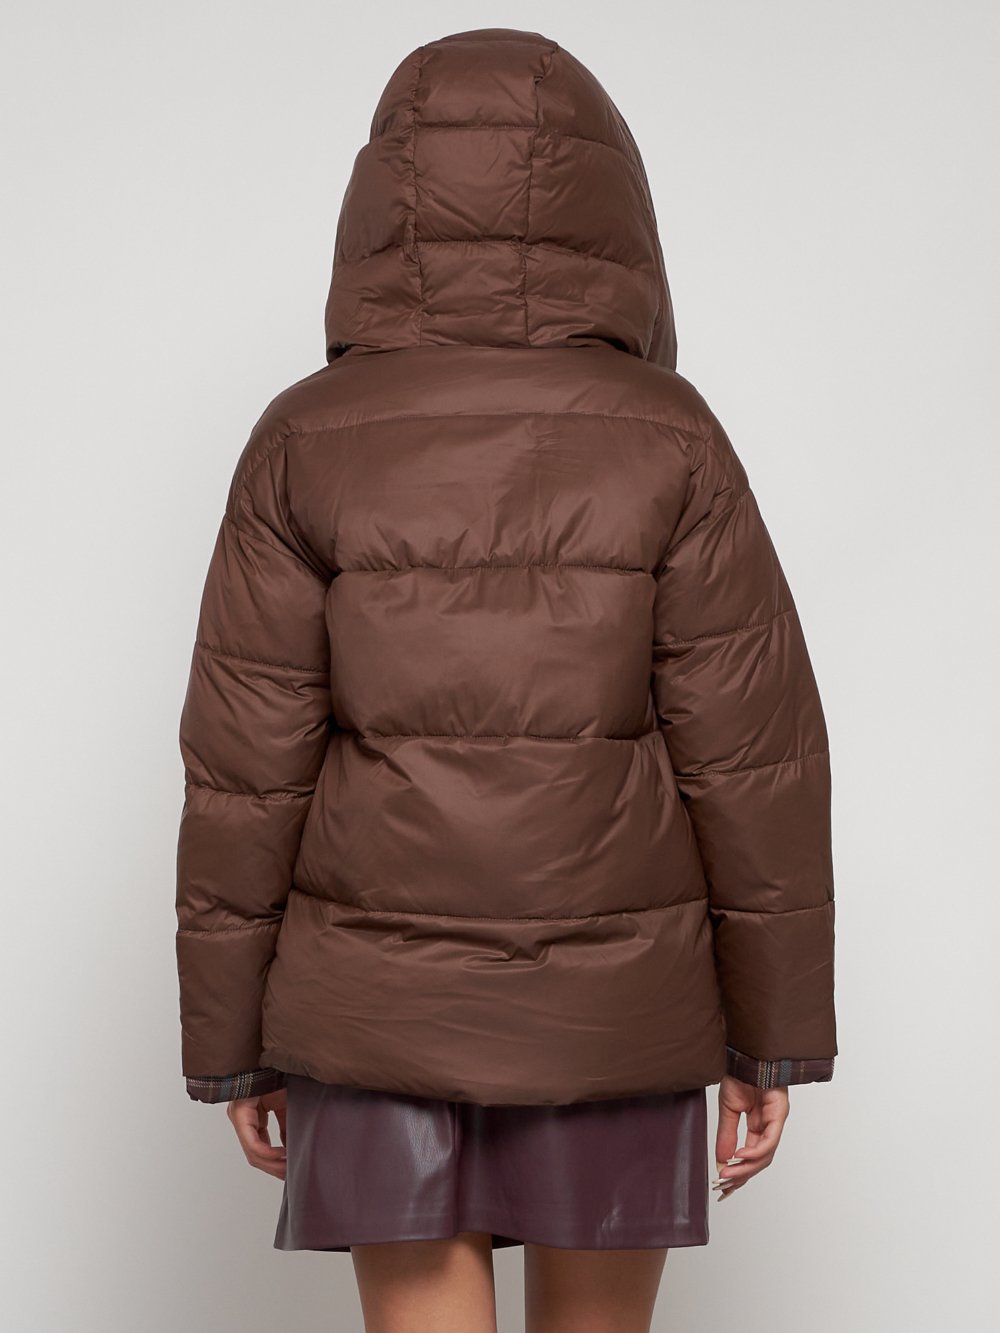 Купить куртку женскую зимнюю оптом от производителя недорого в Москве 133105K 1